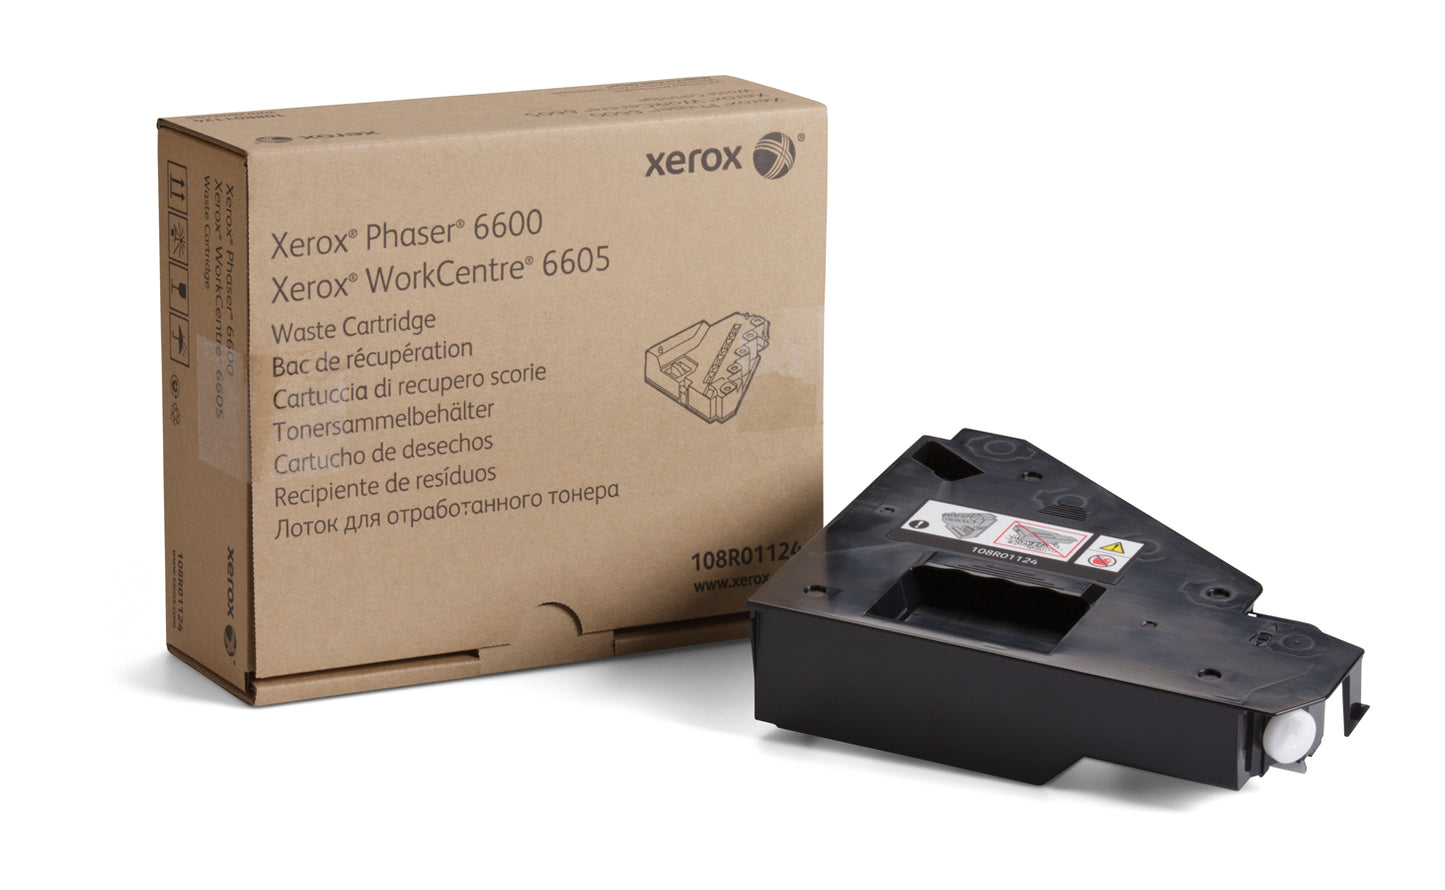 XEROX SUPP A3 COL CARTUCHO DE DESPERDICIO PHASER TONR 6600/WC 6605/6655 30.000 IMPS